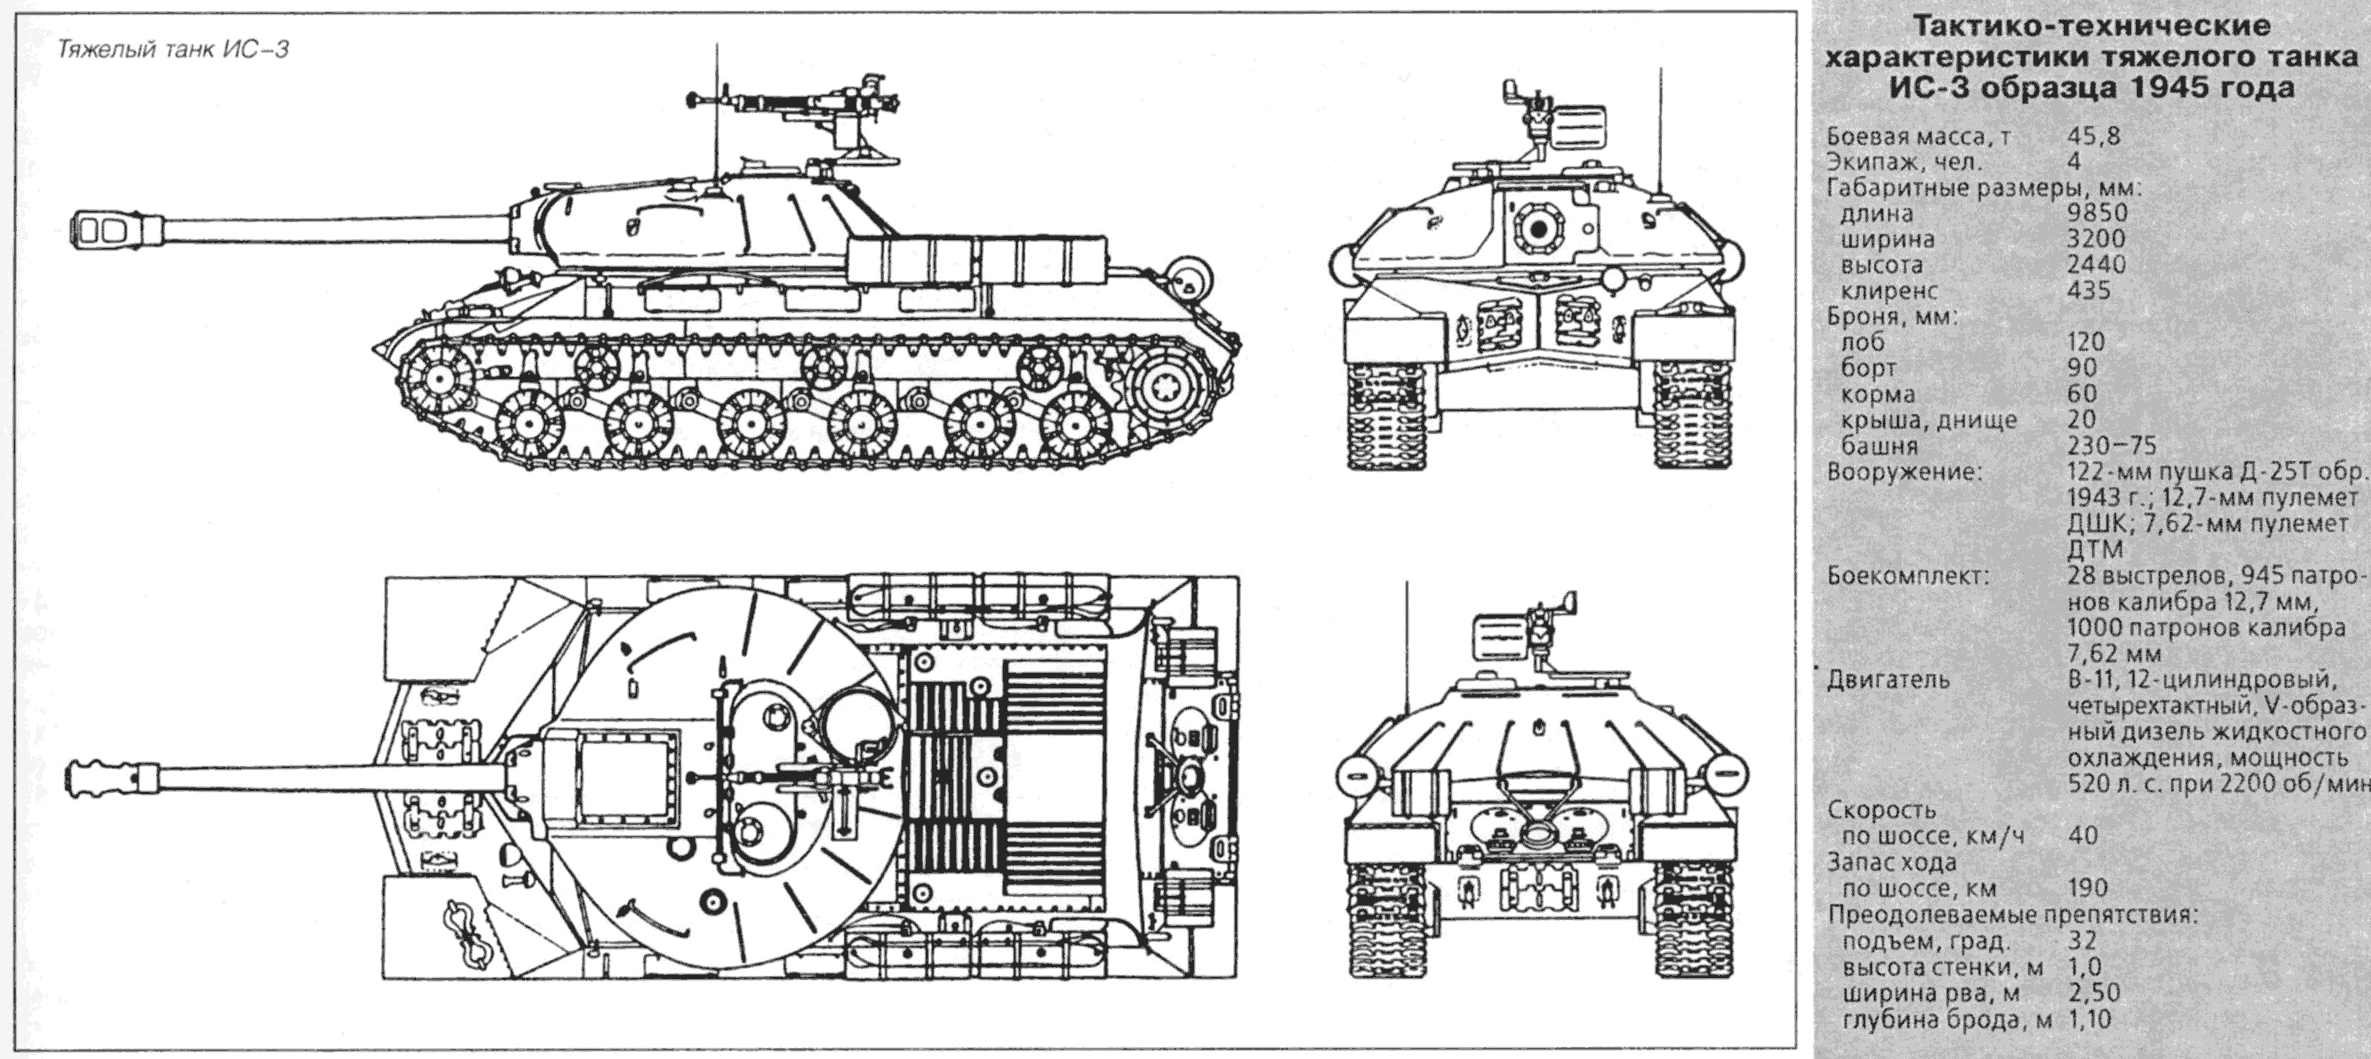 Тяжелые танки ис-1 и ис-2.